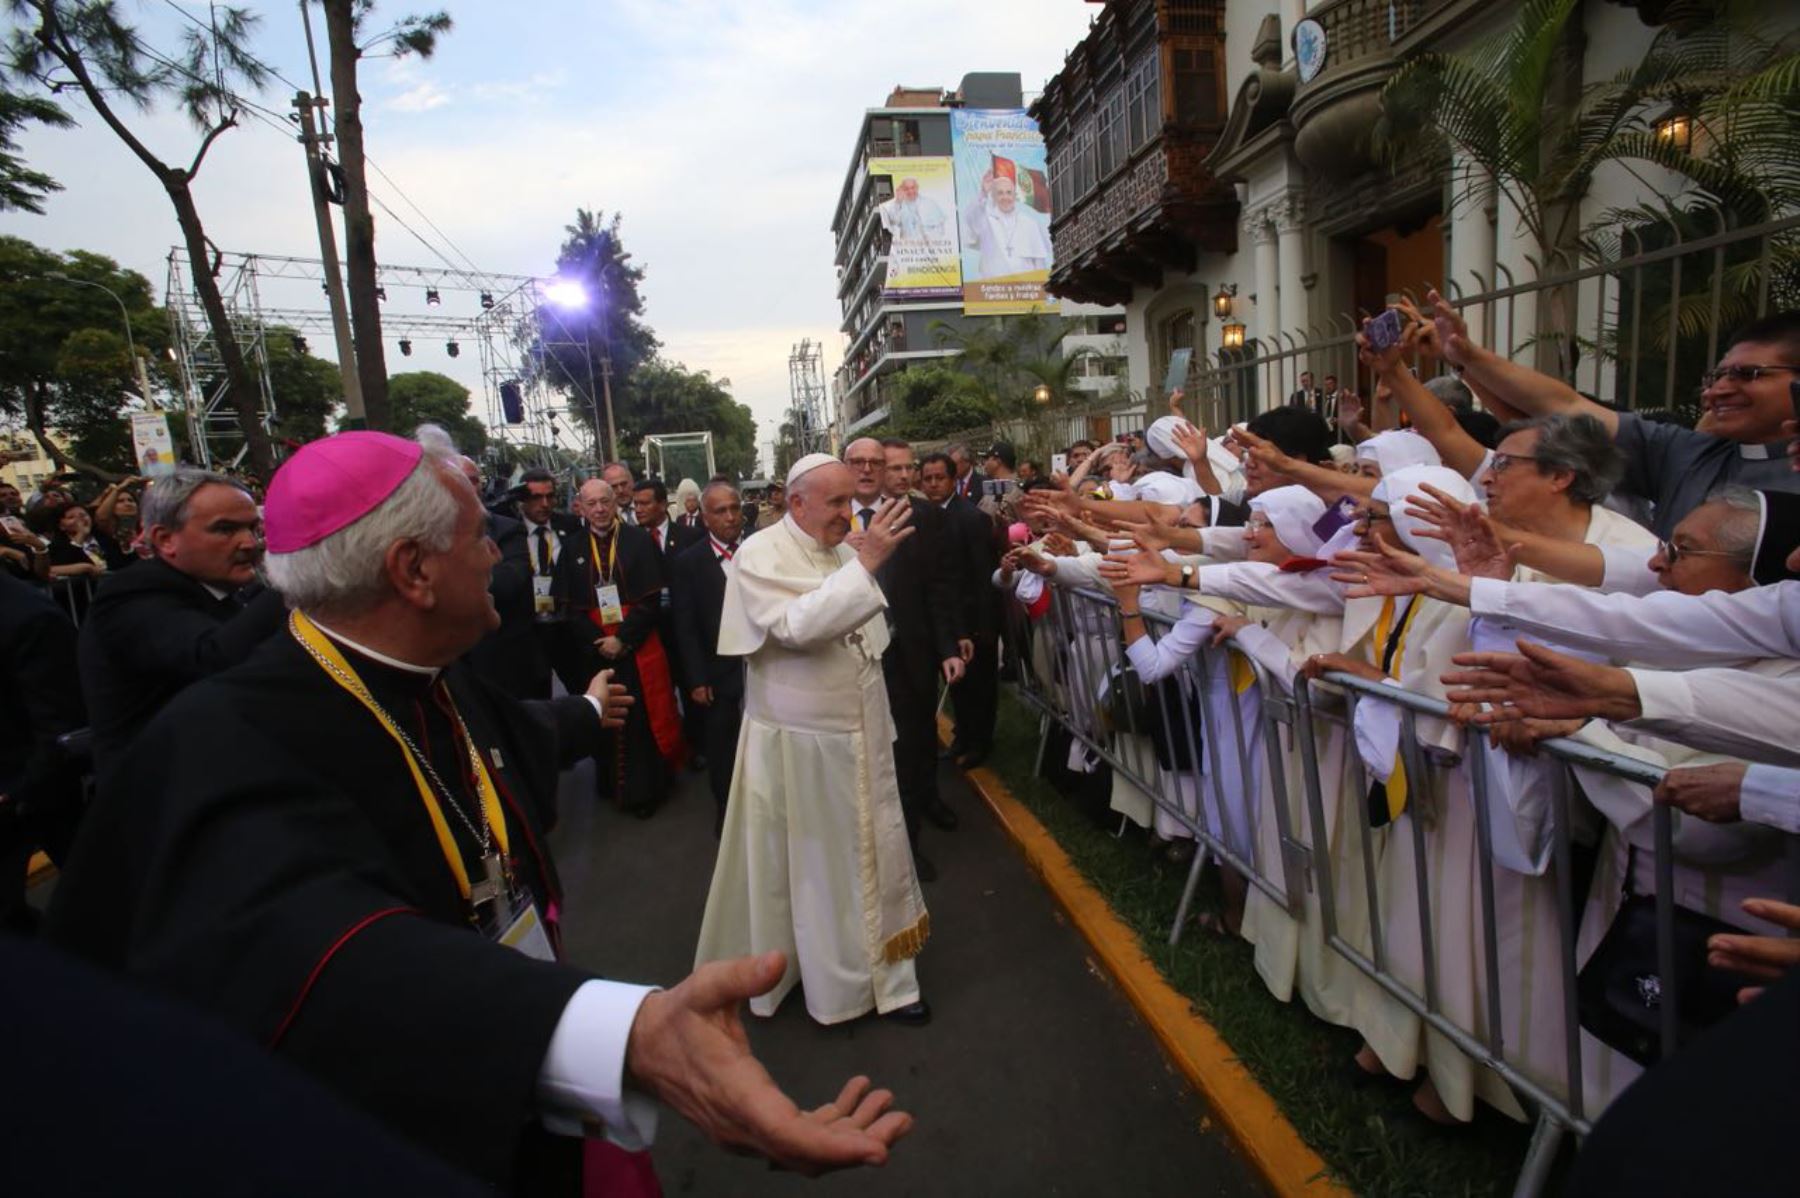 Al llegar a la Nunciatura, el Papa Francisco saludó a los fieles que los esperaban en el lugar. ANDINA/Cesar Garcia